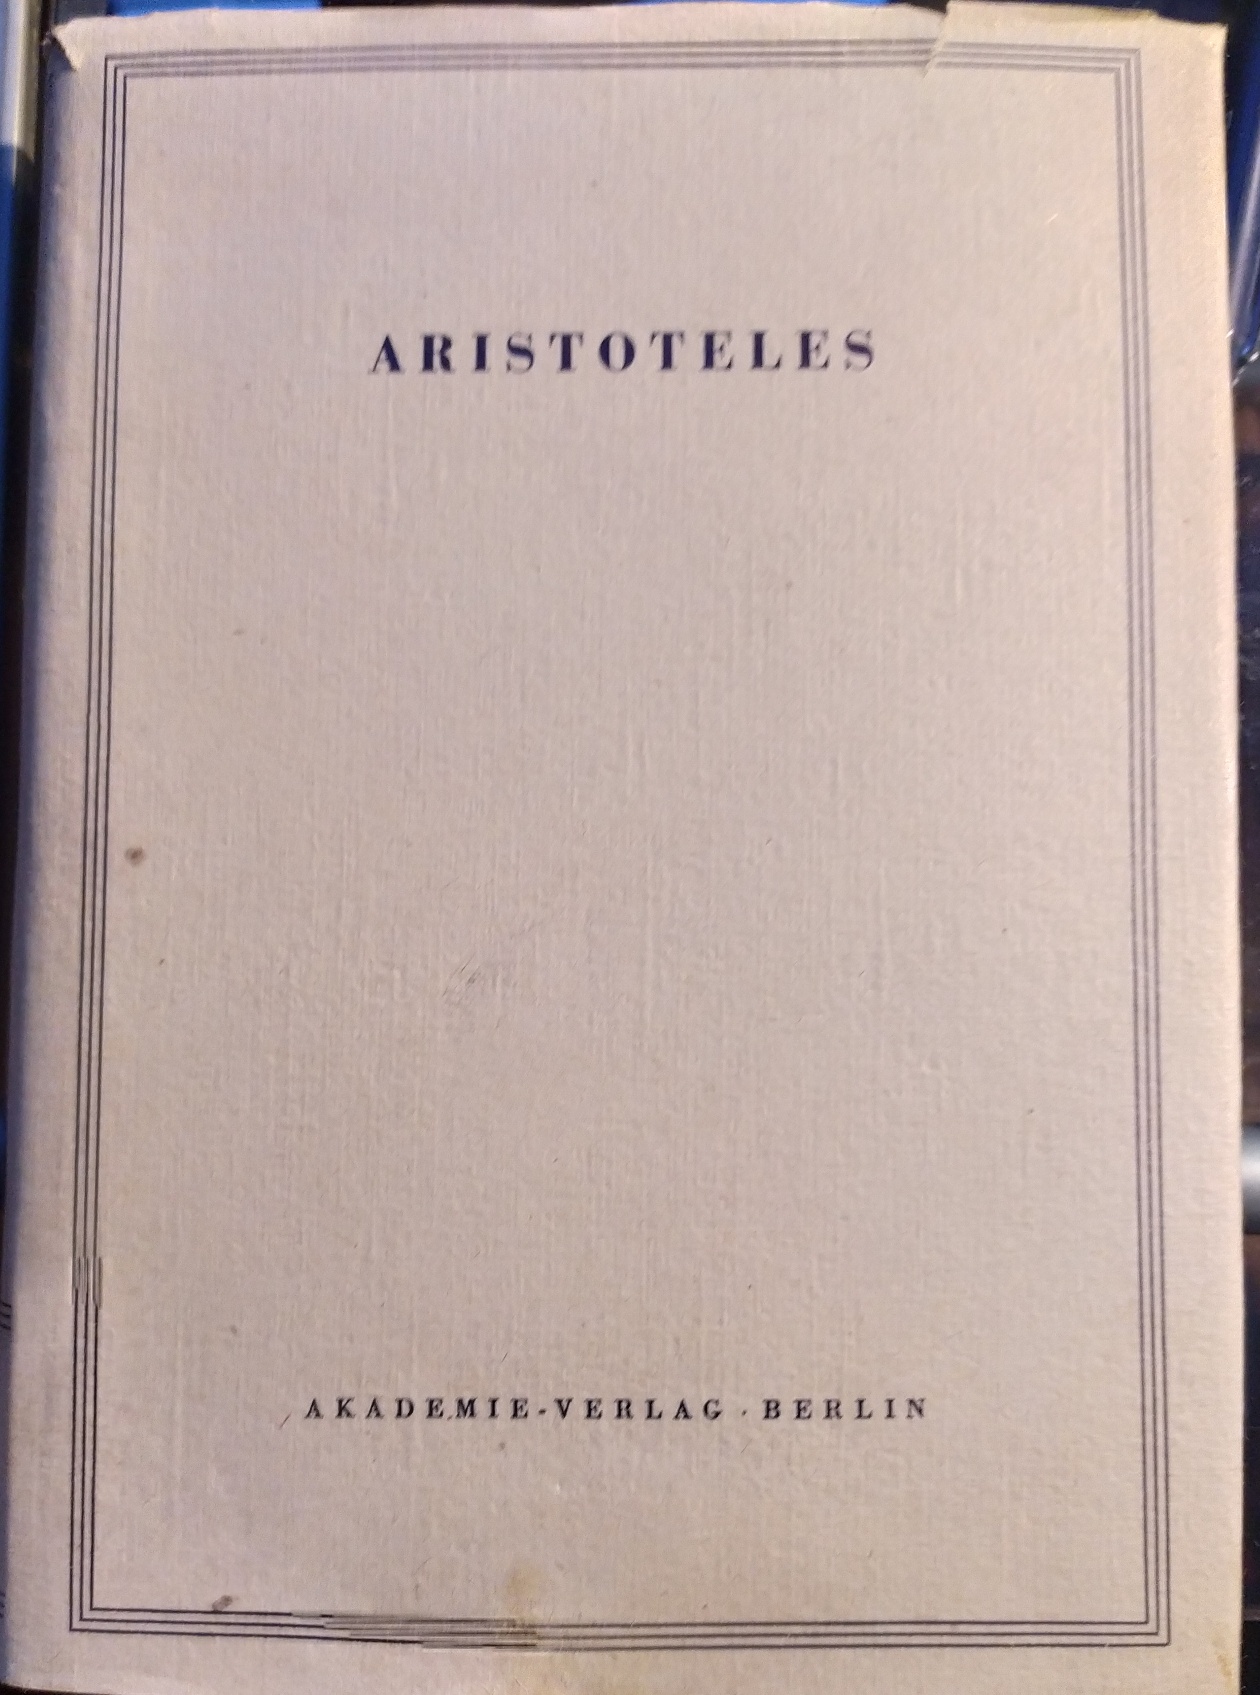 Nikomachische Ethik. Übersetzt und kommentiert von Franz Dirlmeier. Band 6 der Aristoteles Werke in deutscher Übersetzung. - Aristoteles